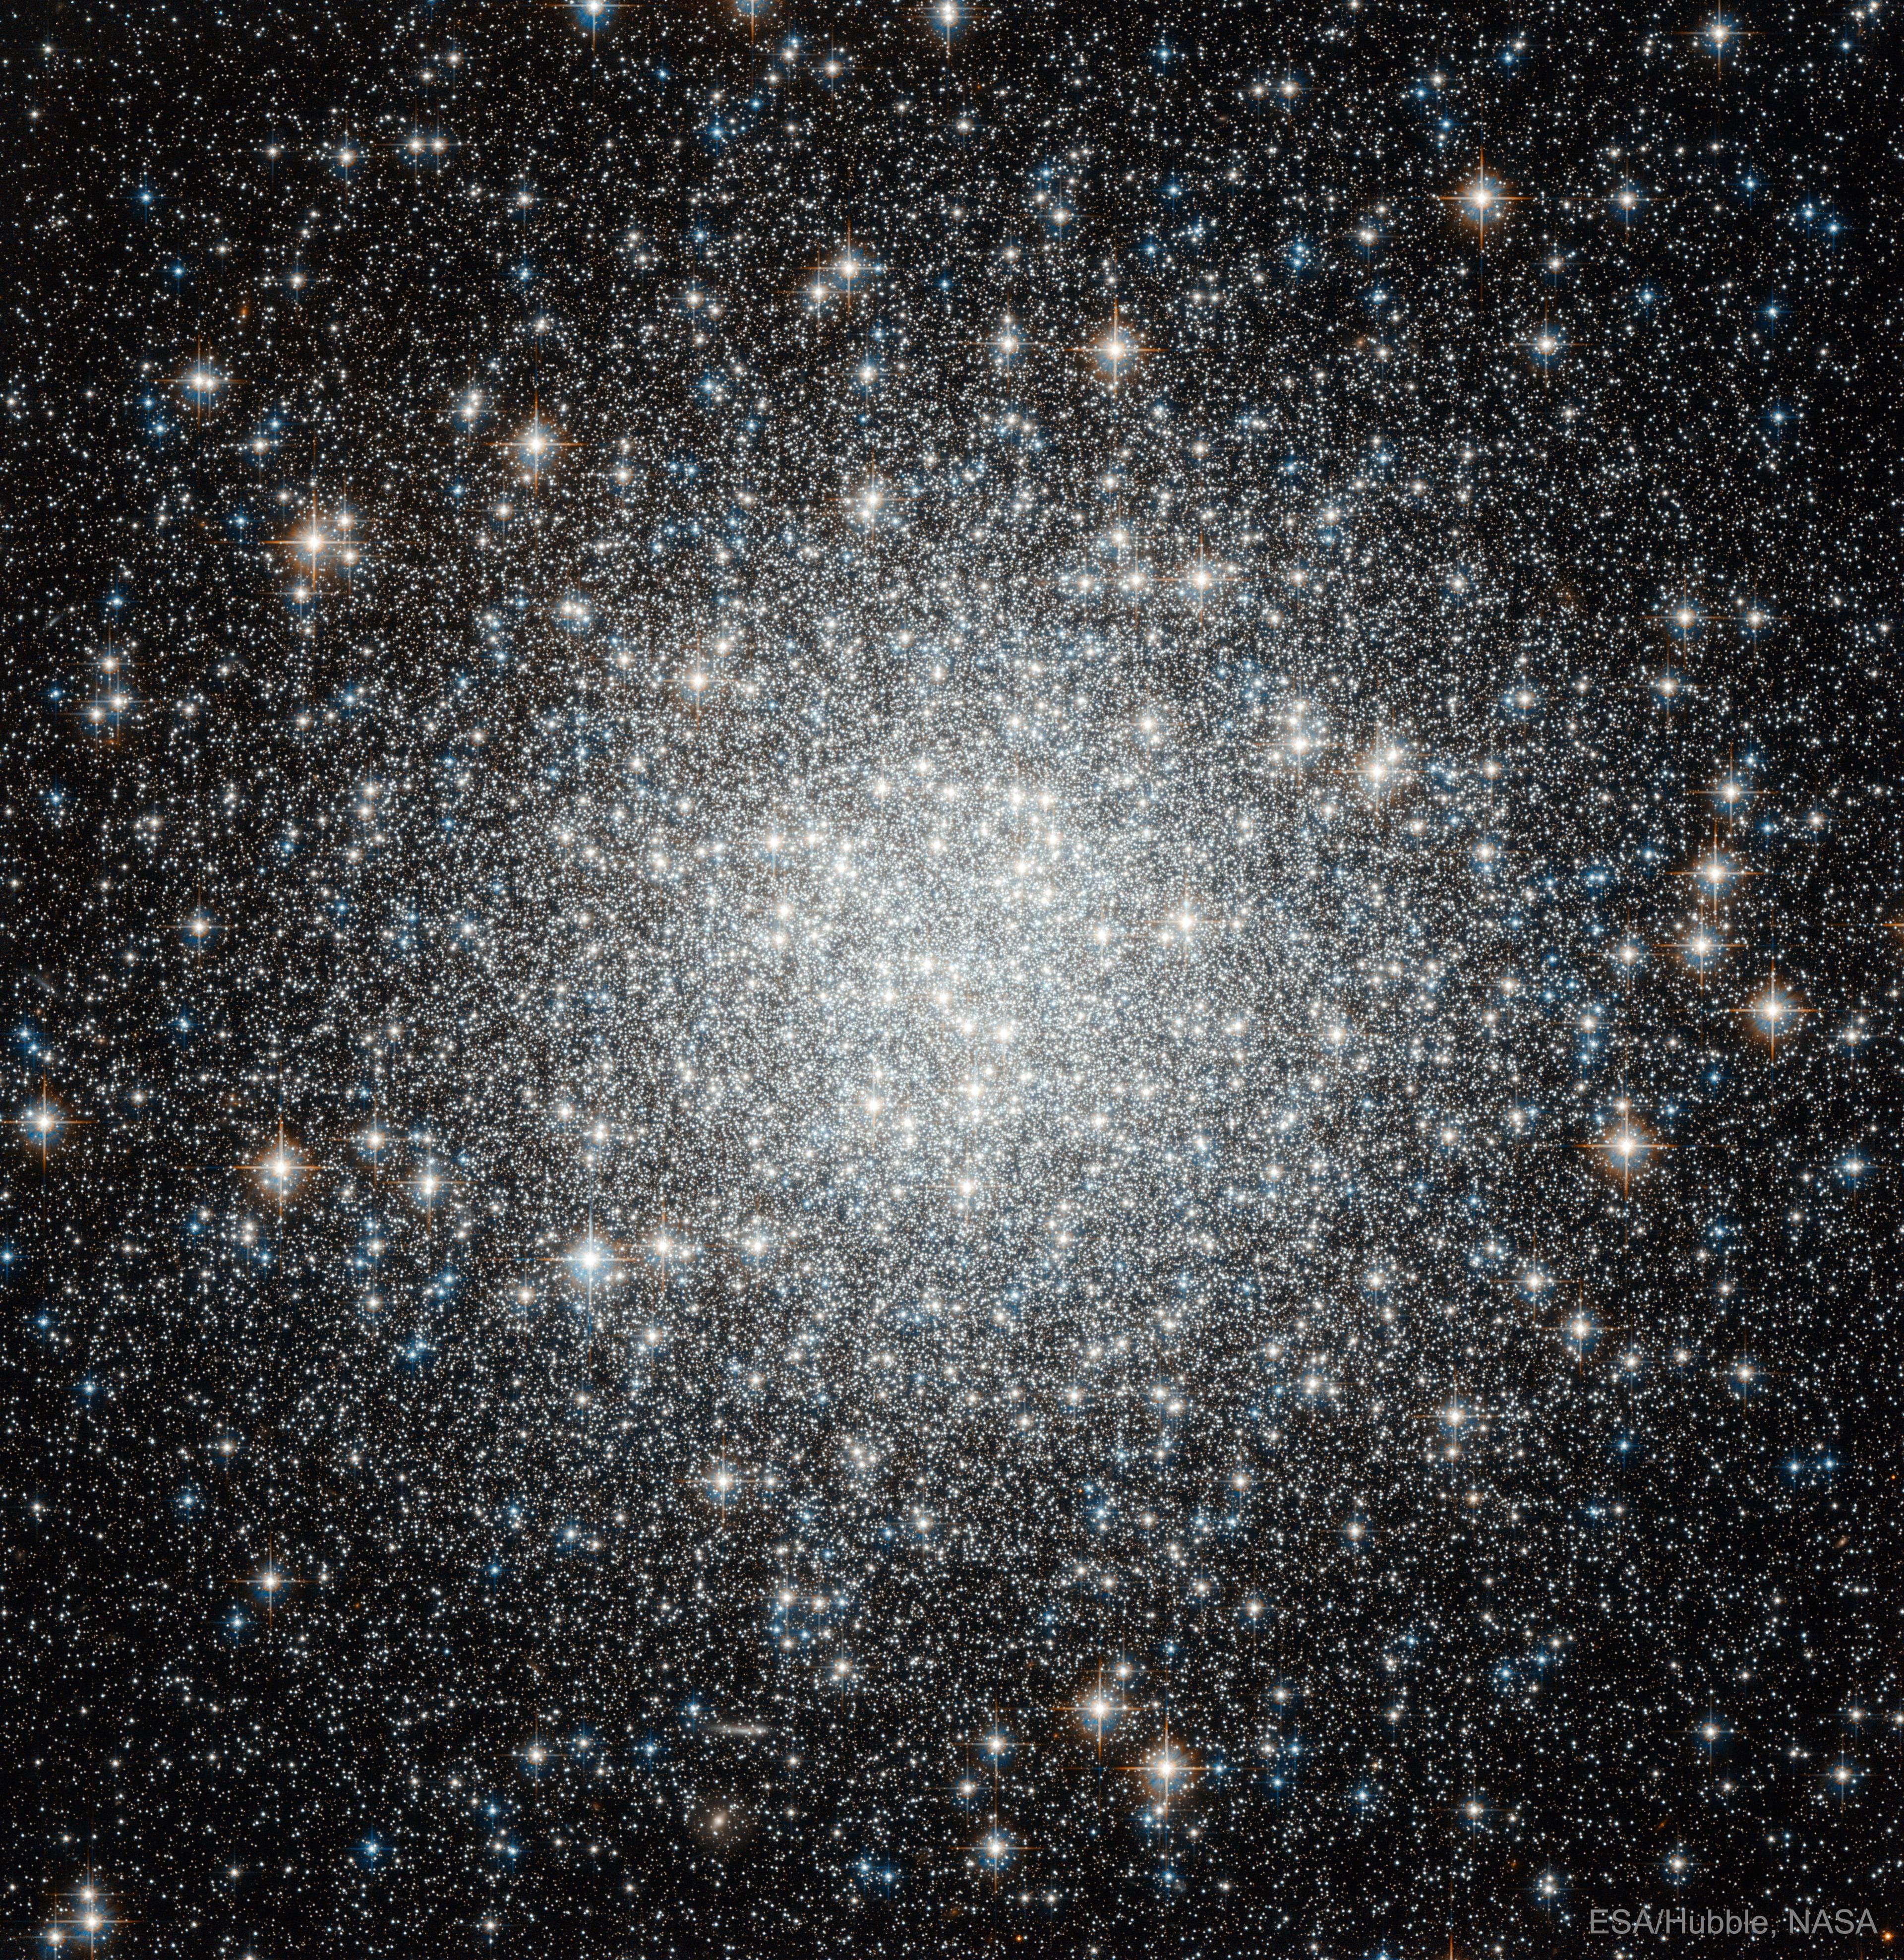 نجوم العنقود المغلق م53 البرّاقة بألوانها البيضاء والزرقاء، والتي تظهر بتركيز كبير في المنتصف يخف تدريجيّاً باتجاه الخارج حيث تتناثر النجوم متباعدة.